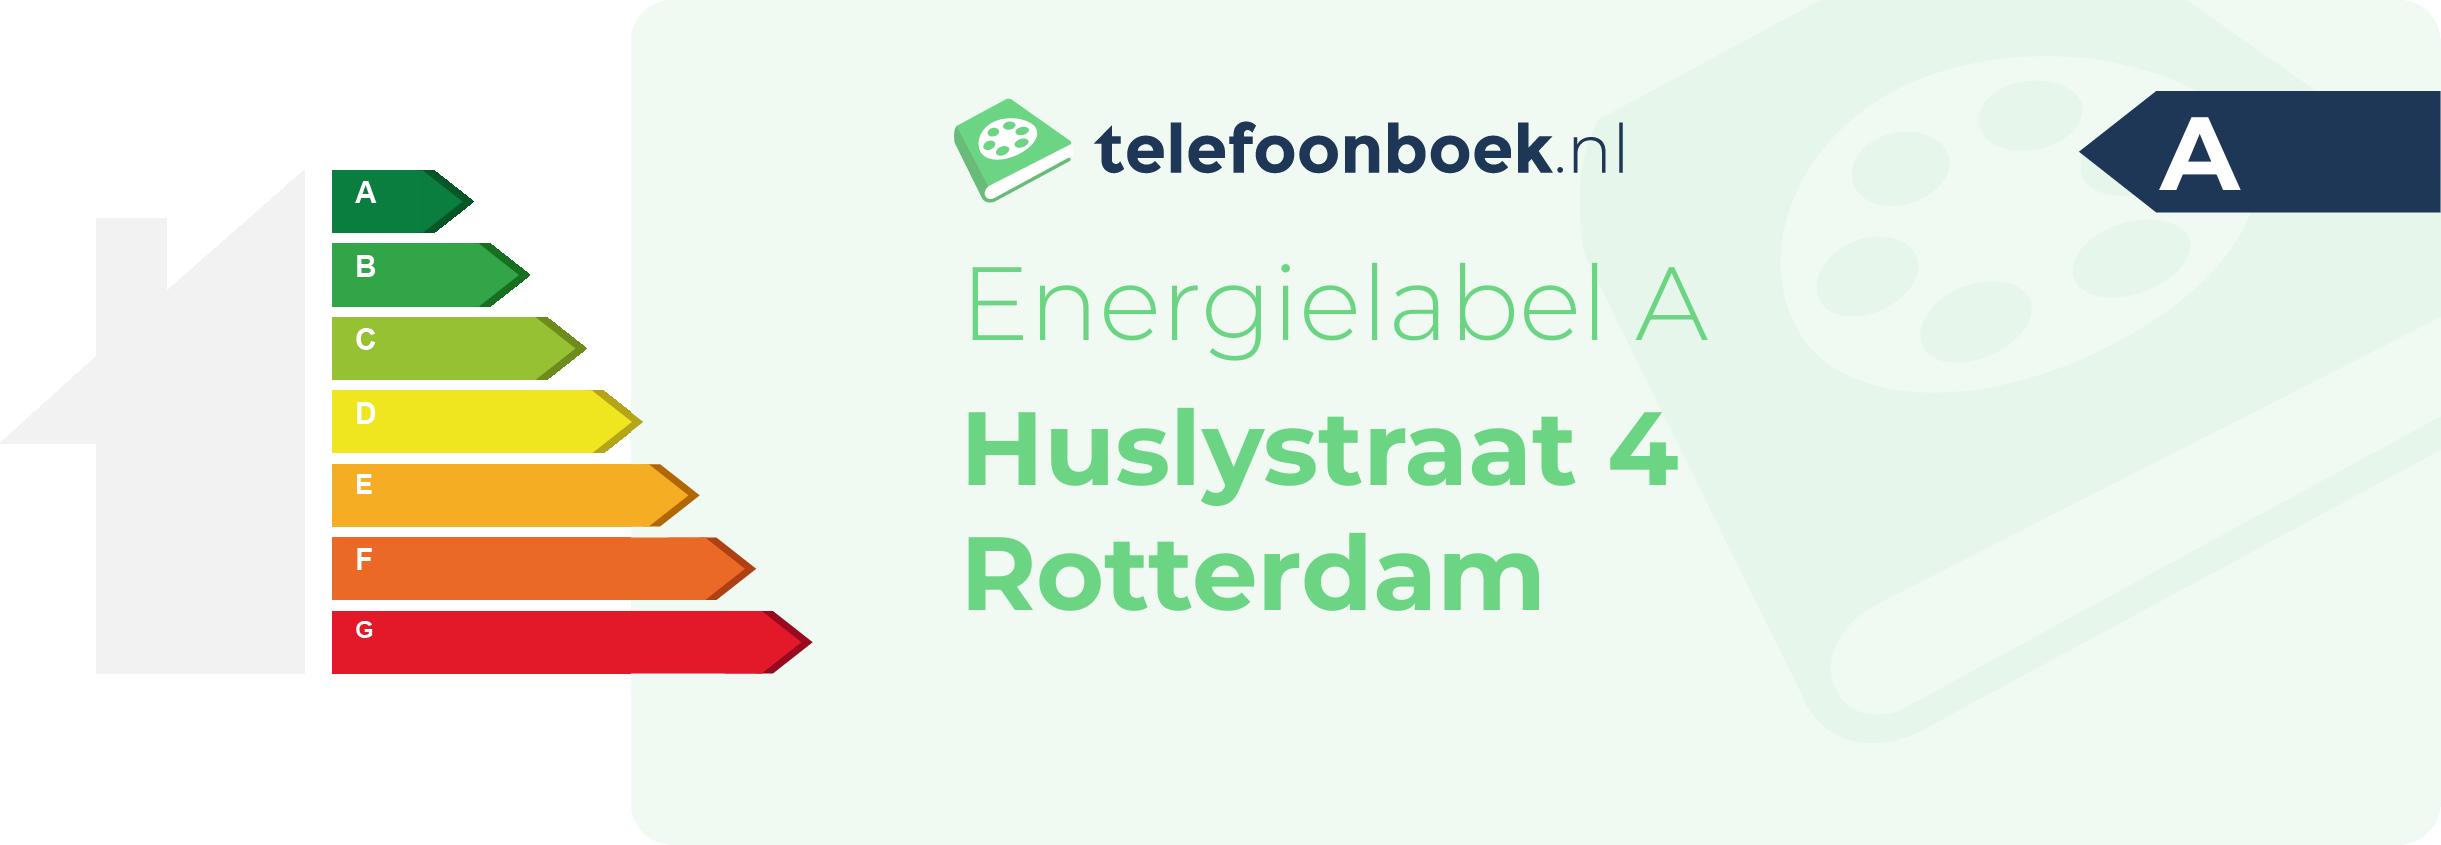 Energielabel Huslystraat 4 Rotterdam